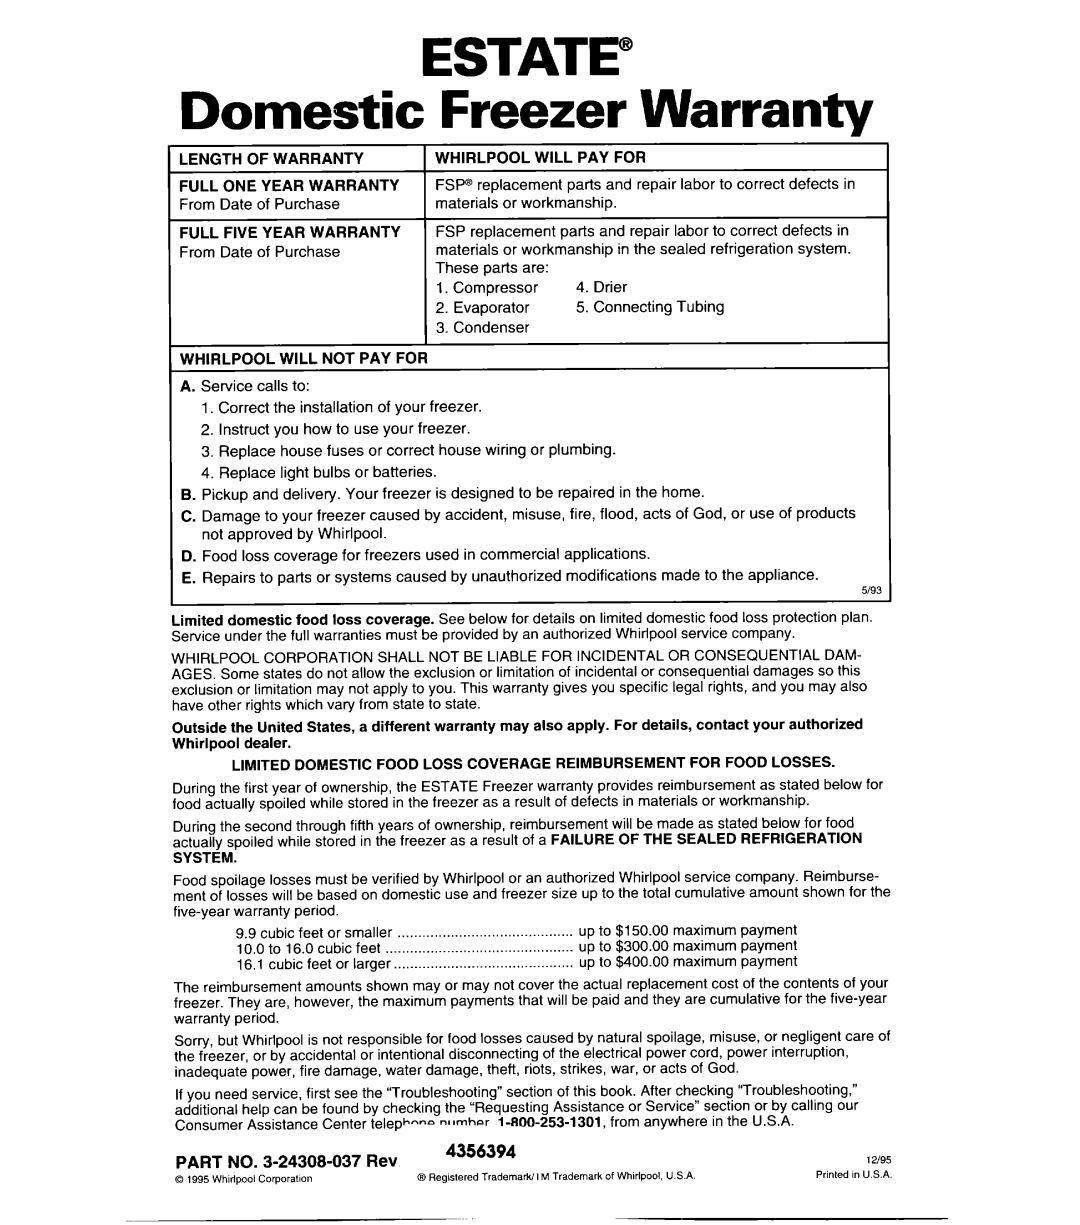 Whirlpool CHEST FREEZERS warranty ESTATE” Domestic Freezer Warranty, PART NO. 3-24308-037Rev, 4356394 